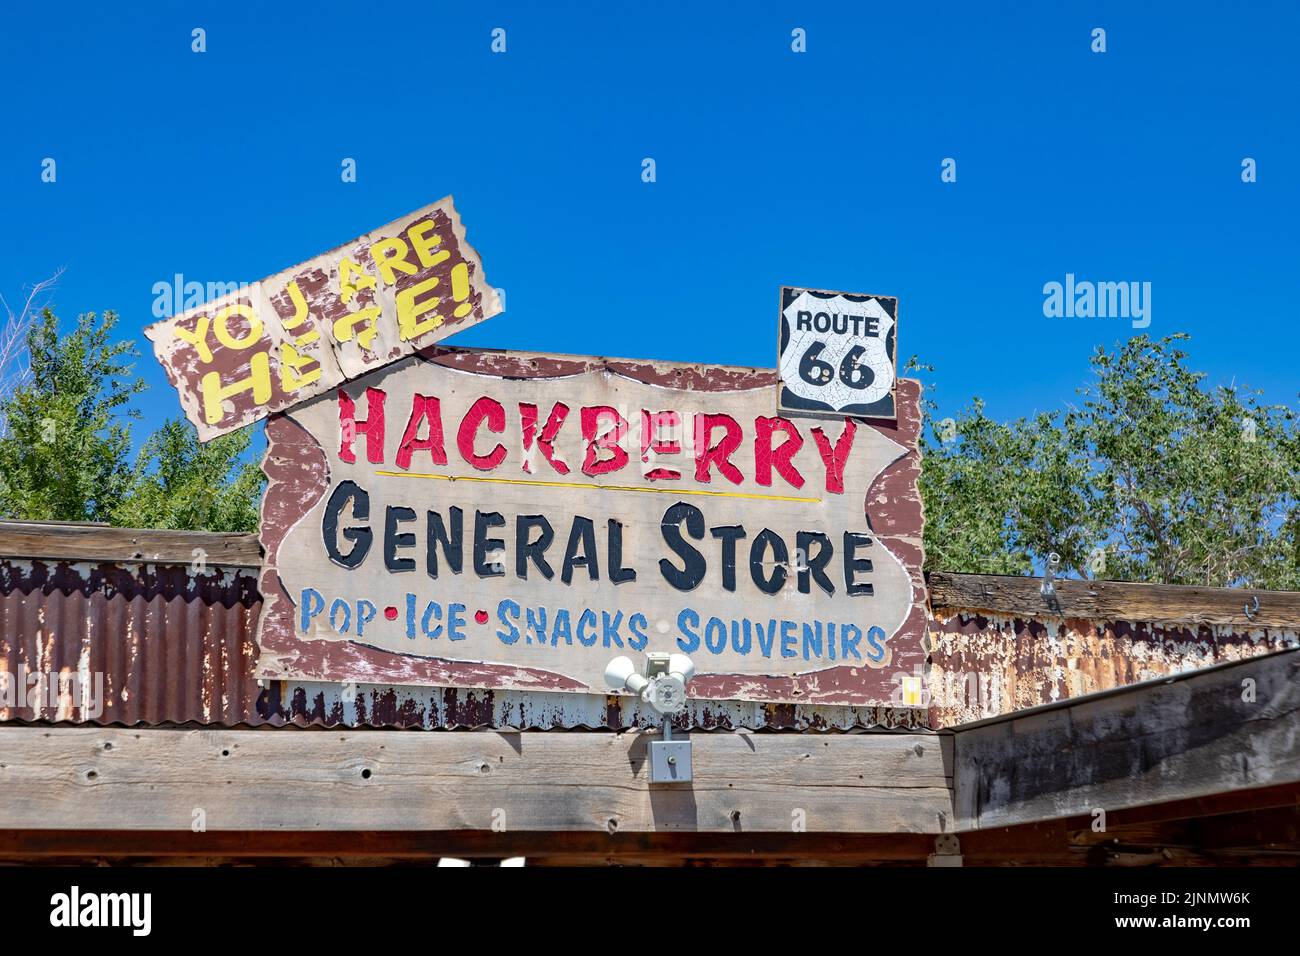 Hackberry, EE.UU. - 25 de mayo de 2022: Ruta histórica 66 y cartel de tienda general en Hackberry, EE.UU. Foto de stock